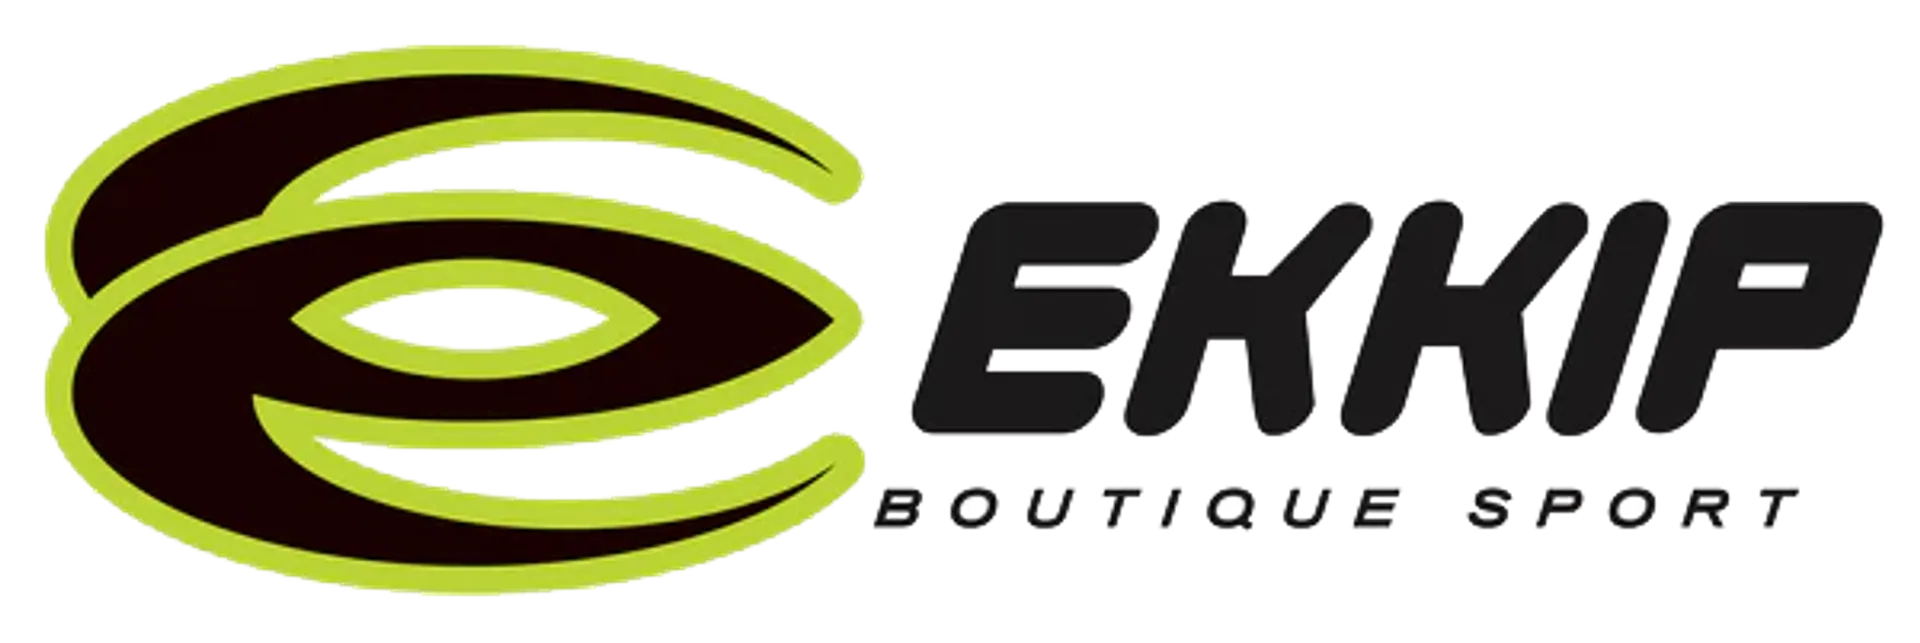 EKKIP logo de circulaires